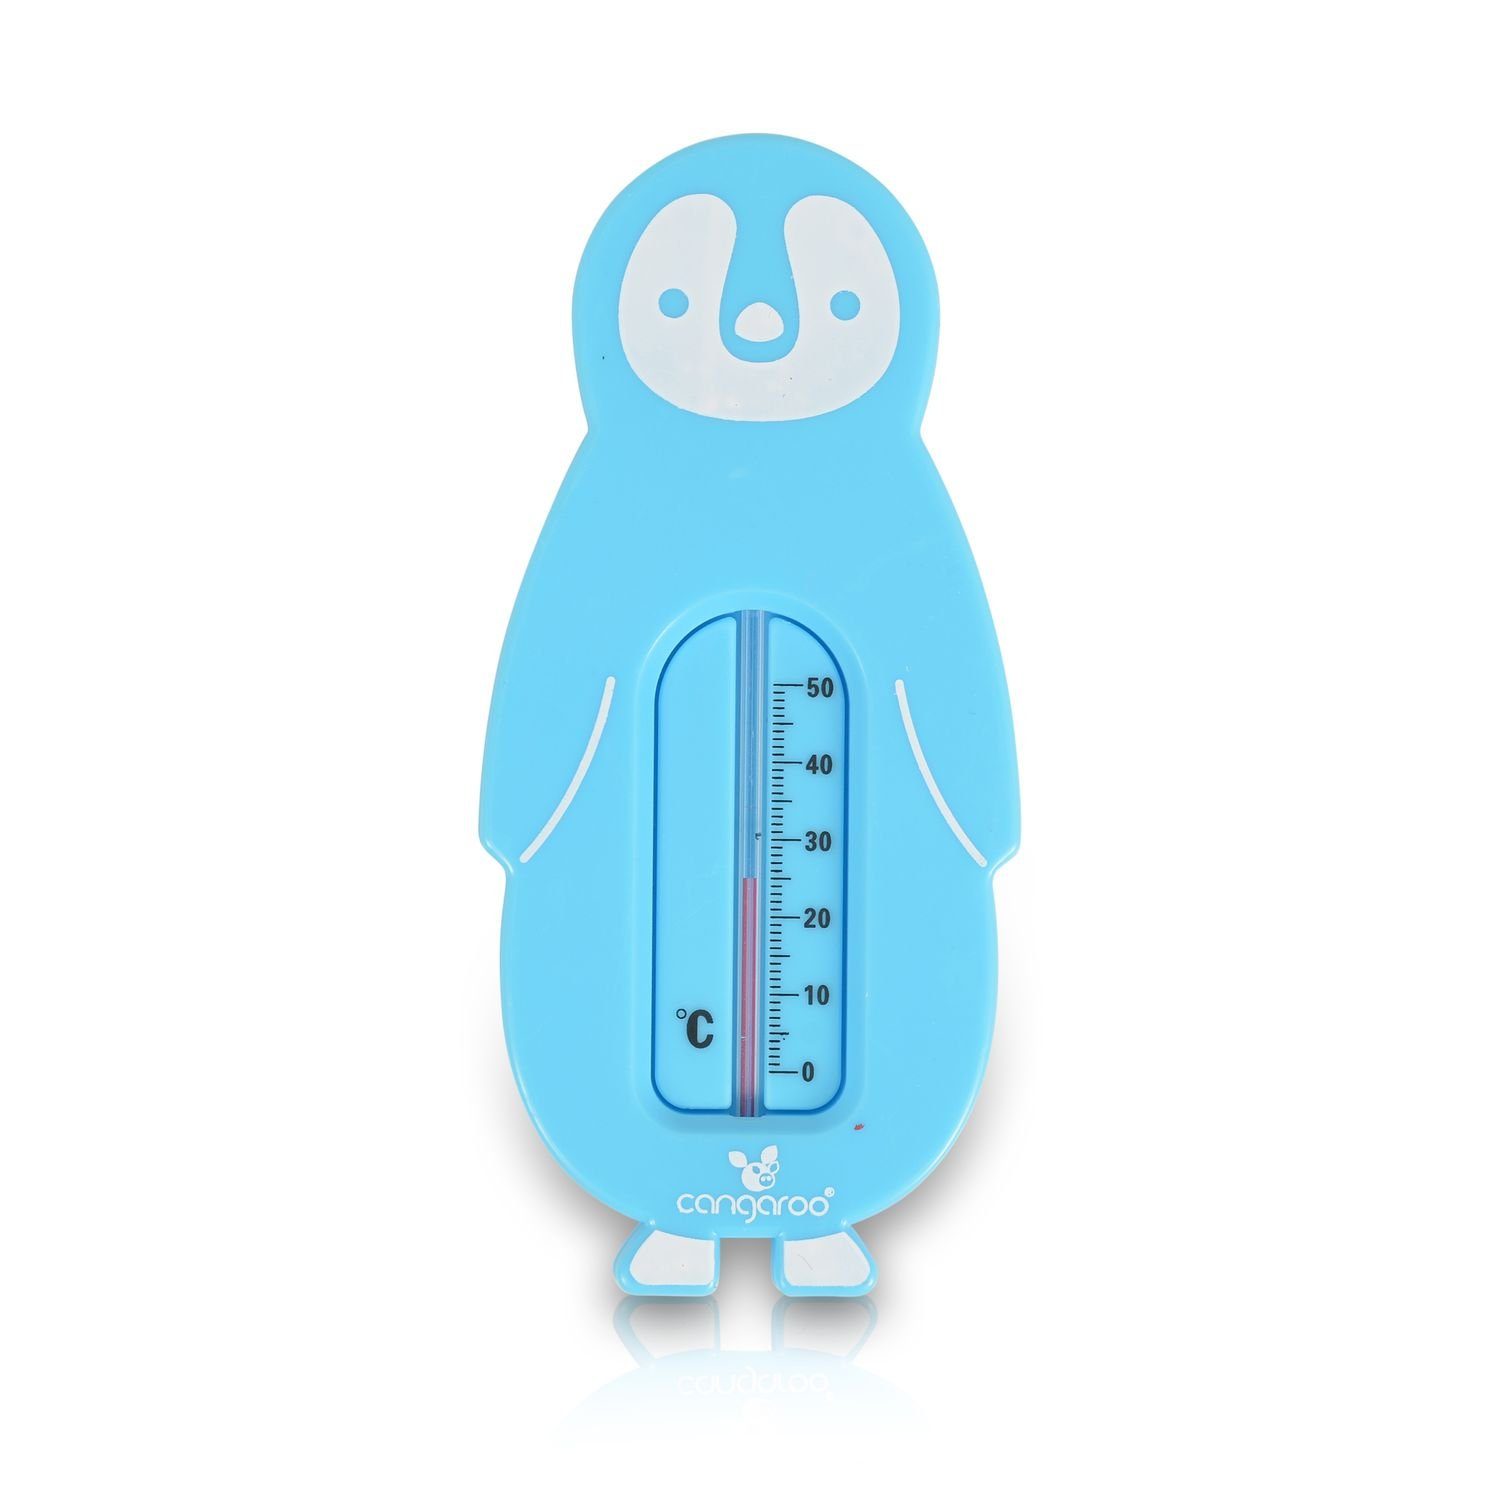 Cangaroo Badethermometer Wasserthermometer Badethermometer, 10 1-tlg., 50°C, bruchsicher blau bis Messbereich